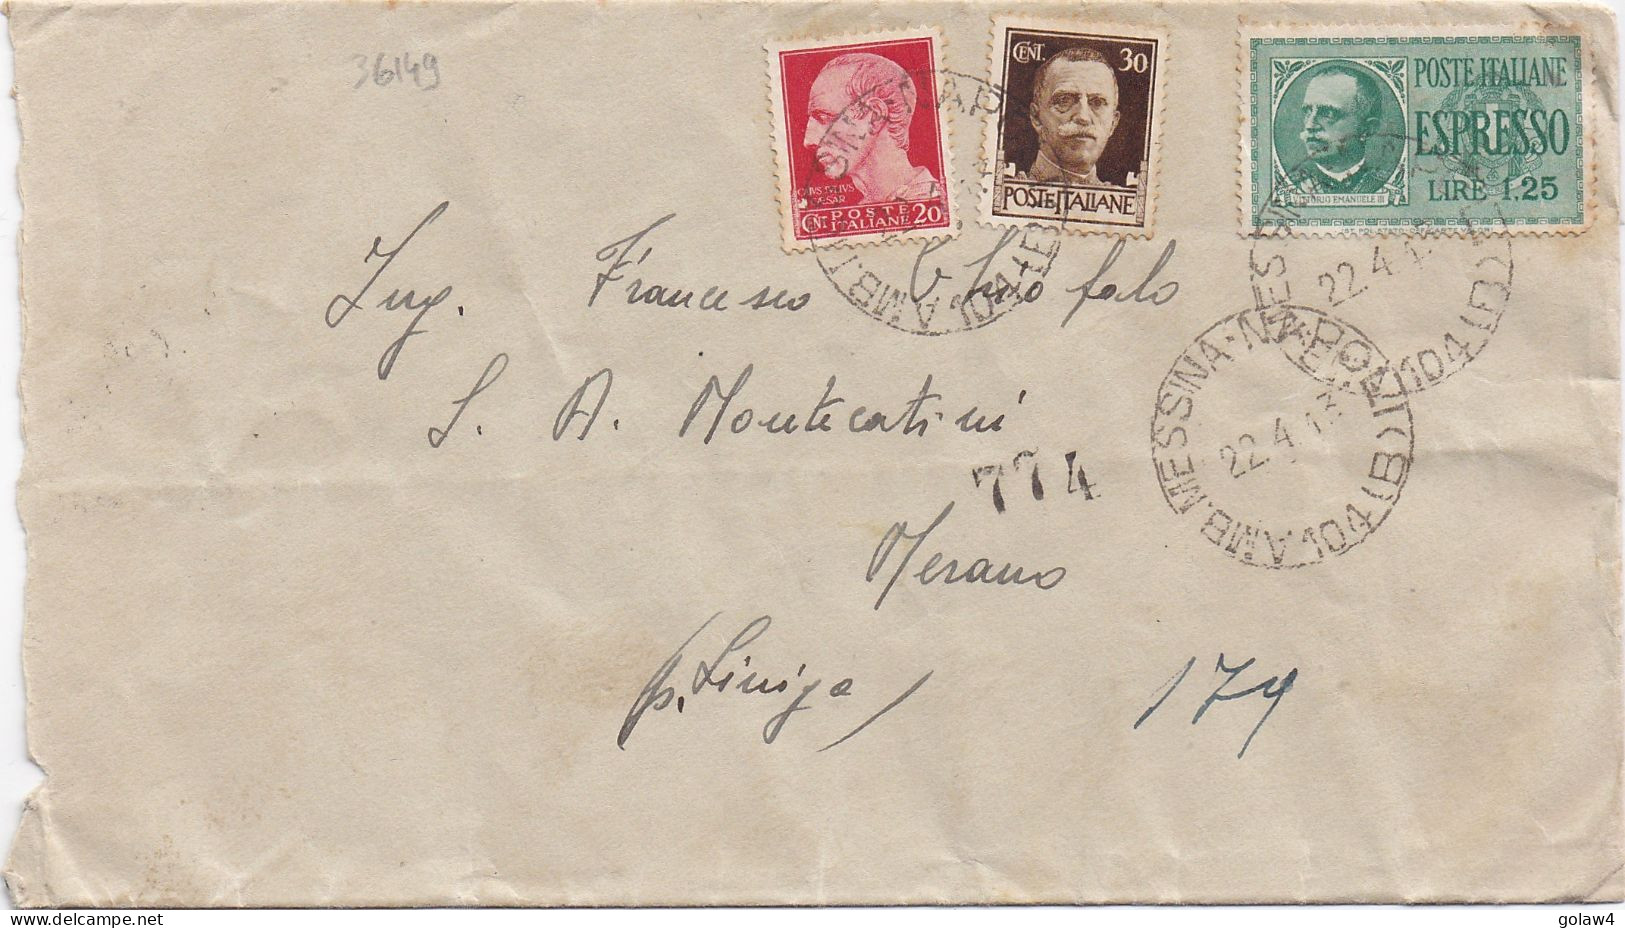 36149# LETTRE ESPRESSO Obl AMB. MESSINA NAPOLI 104 (B) 1943 MERANO - Express Mail